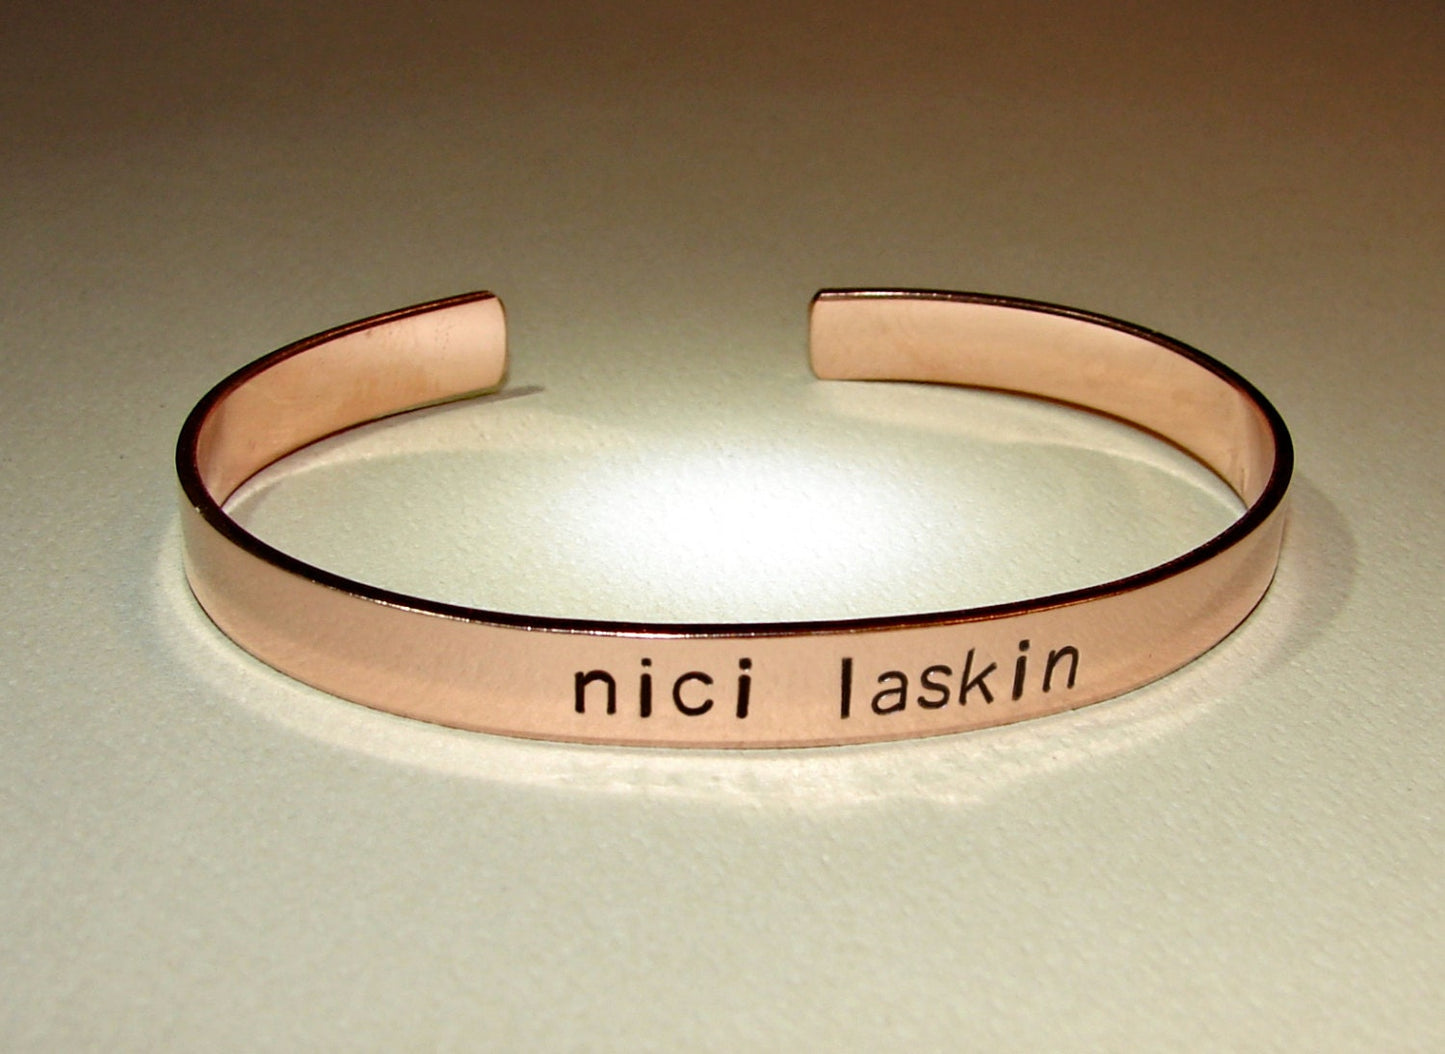 Custom name or personalized bracelet